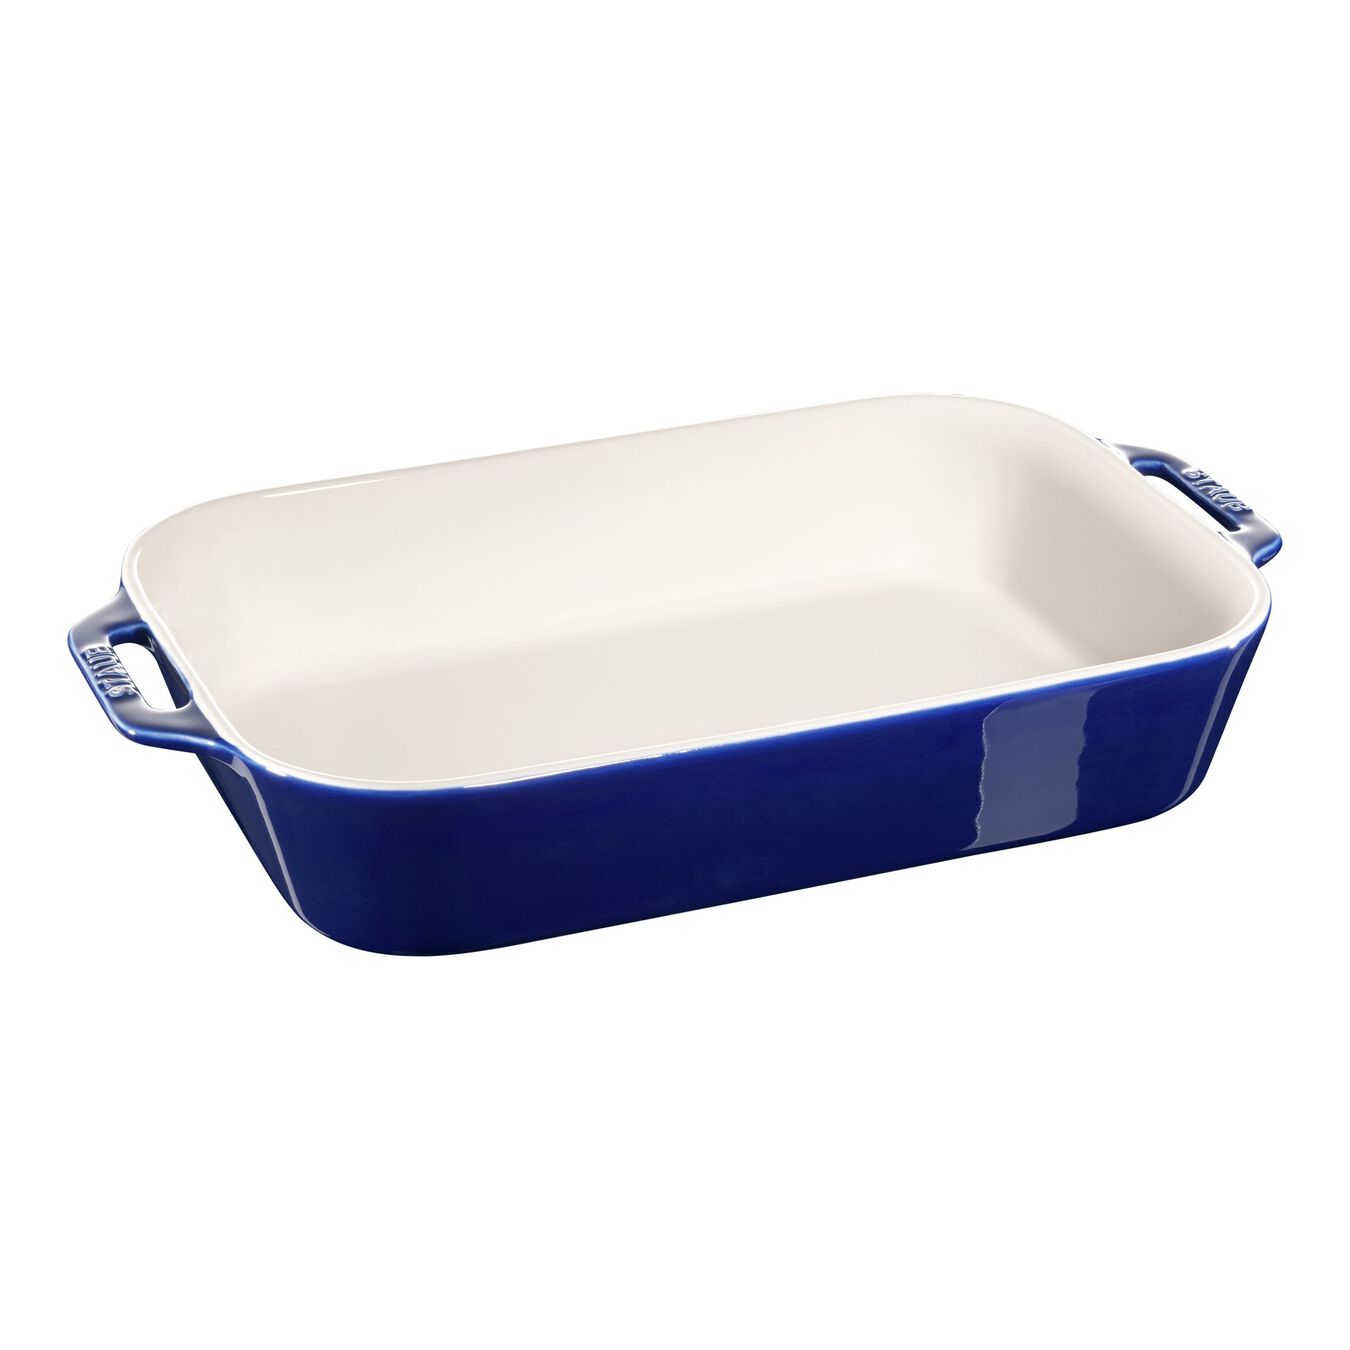 34 cm x 24 cm rectangular Ceramic Oven dish dark-blue,,large 1